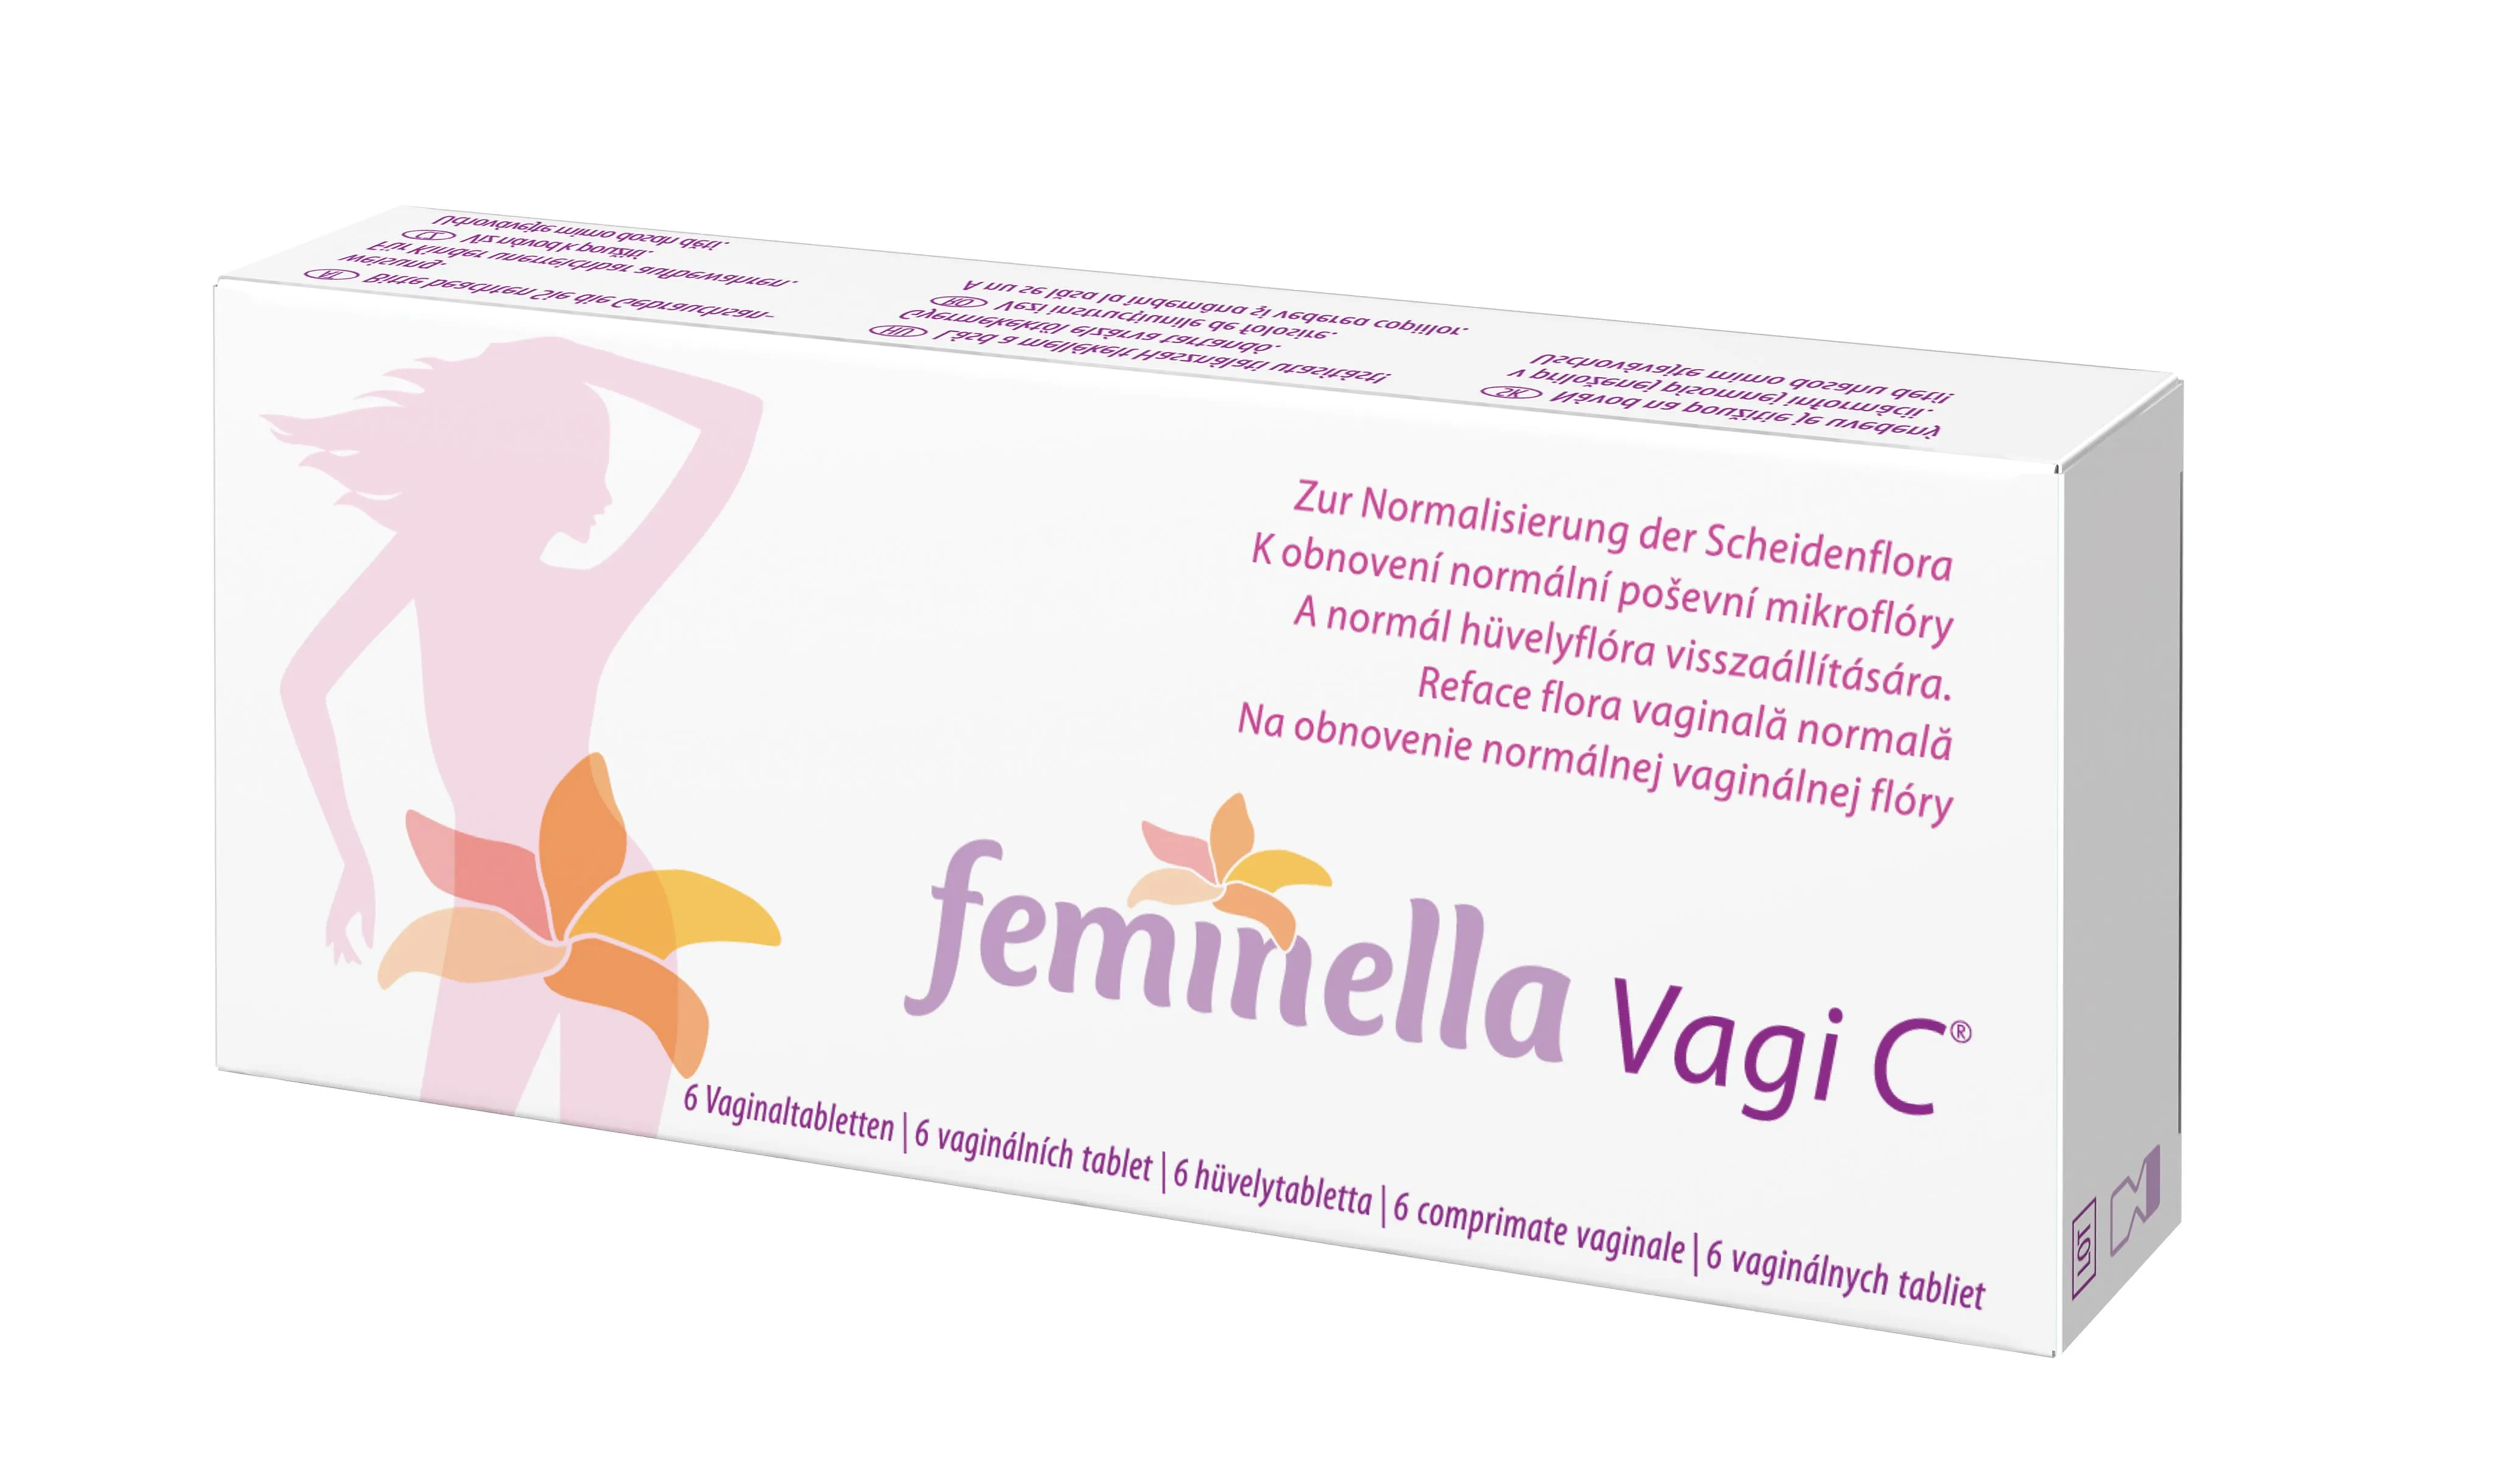 Feminella Vagi C Vaginální Tablety 6 Ks 9202